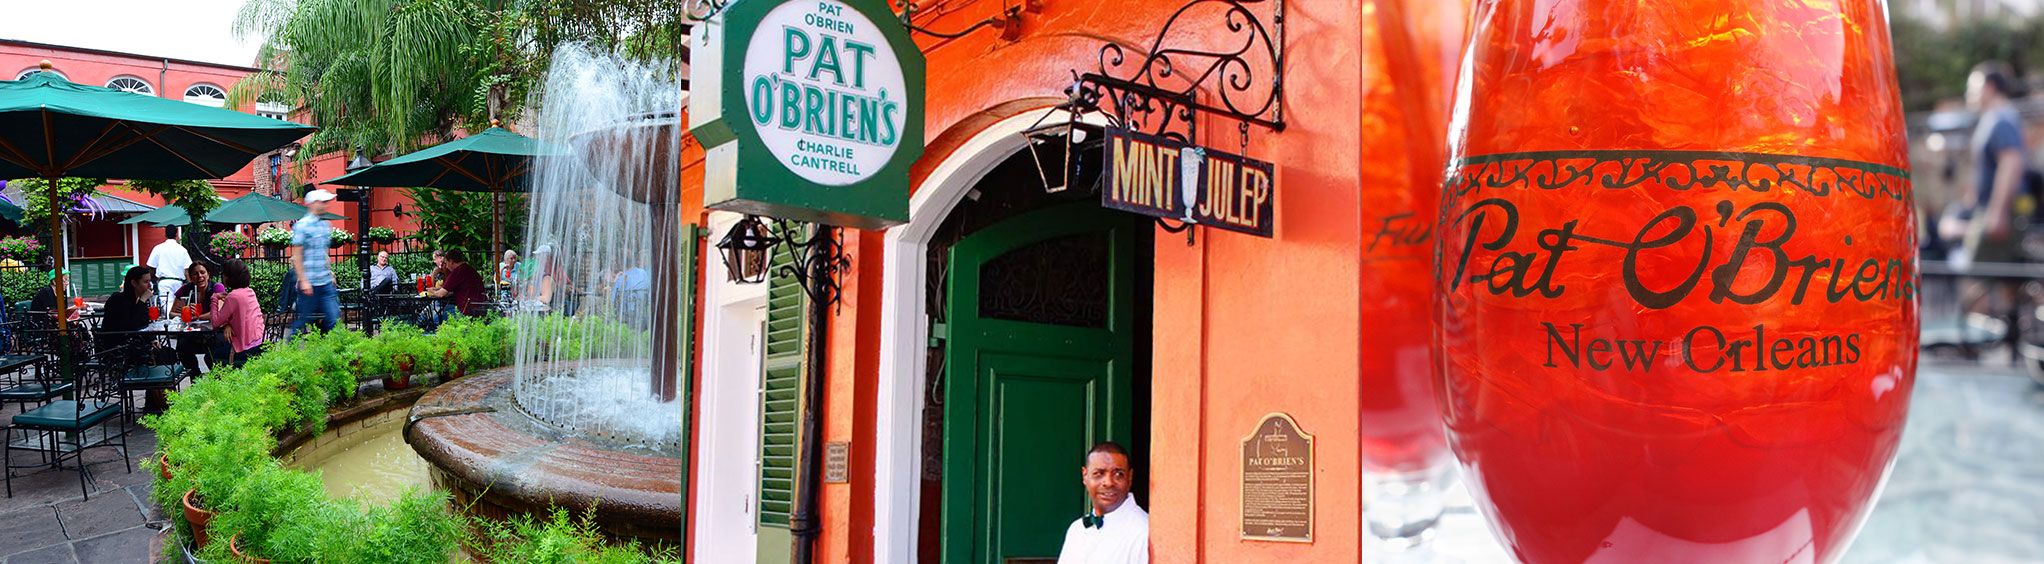 Pat O'Brien's in New Orleans, LA